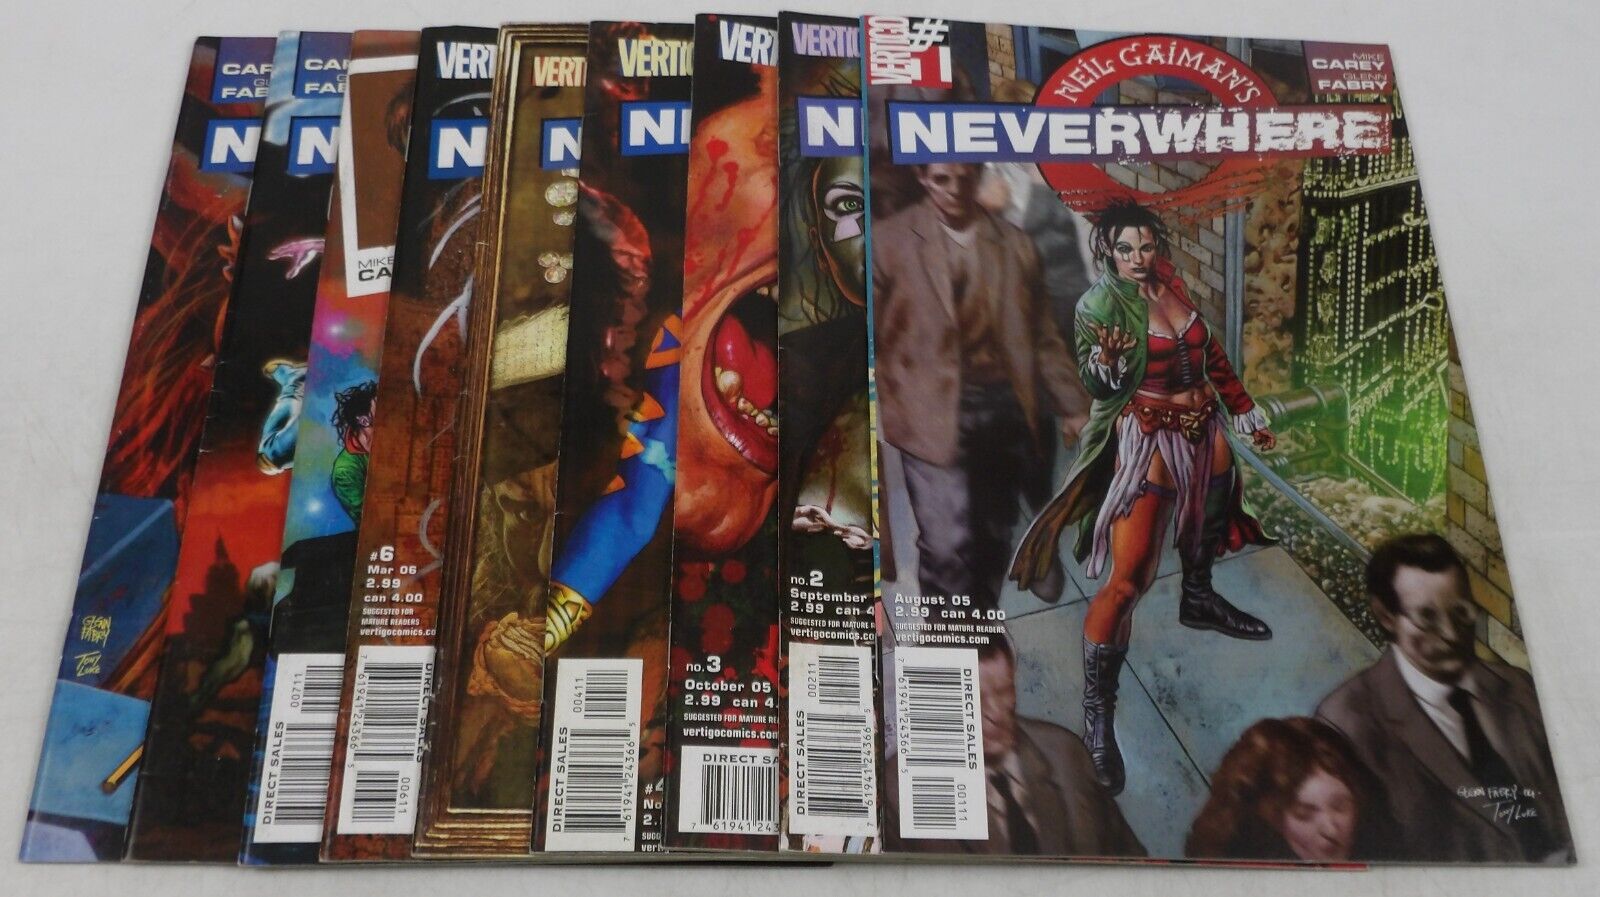 Neil Gaiman's Neverwhere #1-9 VF/NM complete series Mike Carey Vertigo Comics